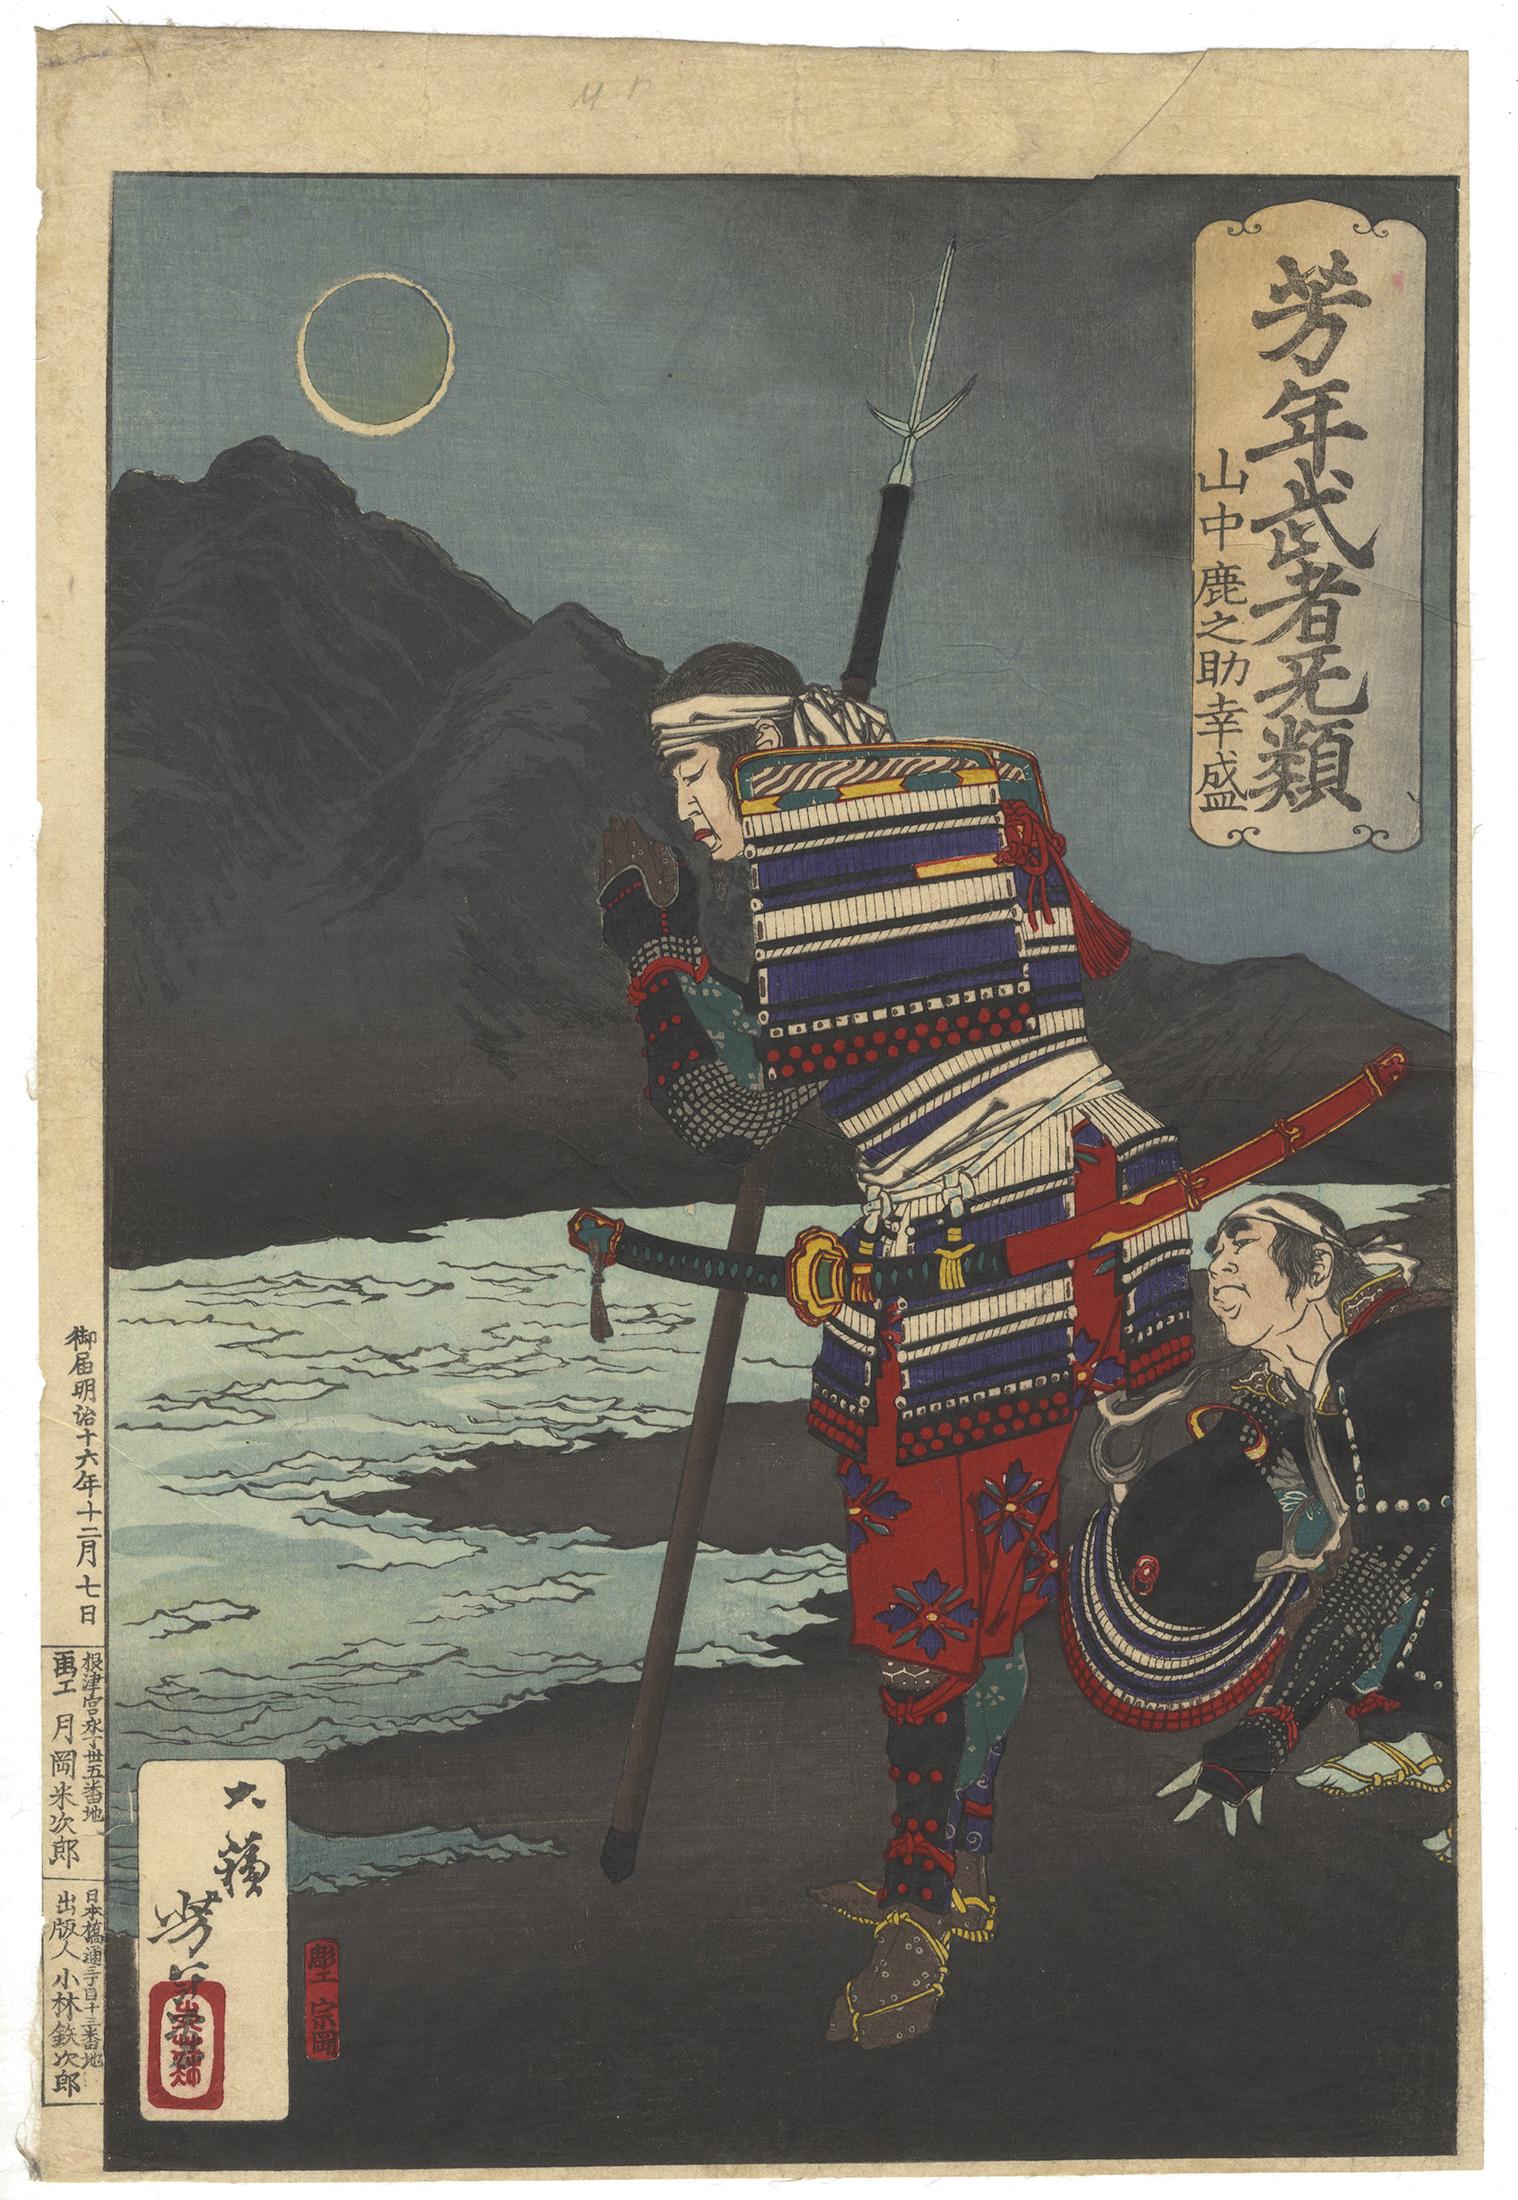 Tsukioka Yoshitoshi Figurative Print - Yoshitoshi, Original Japanese Woodblock Print, Moon, Samurai, River, Ukiyo-e